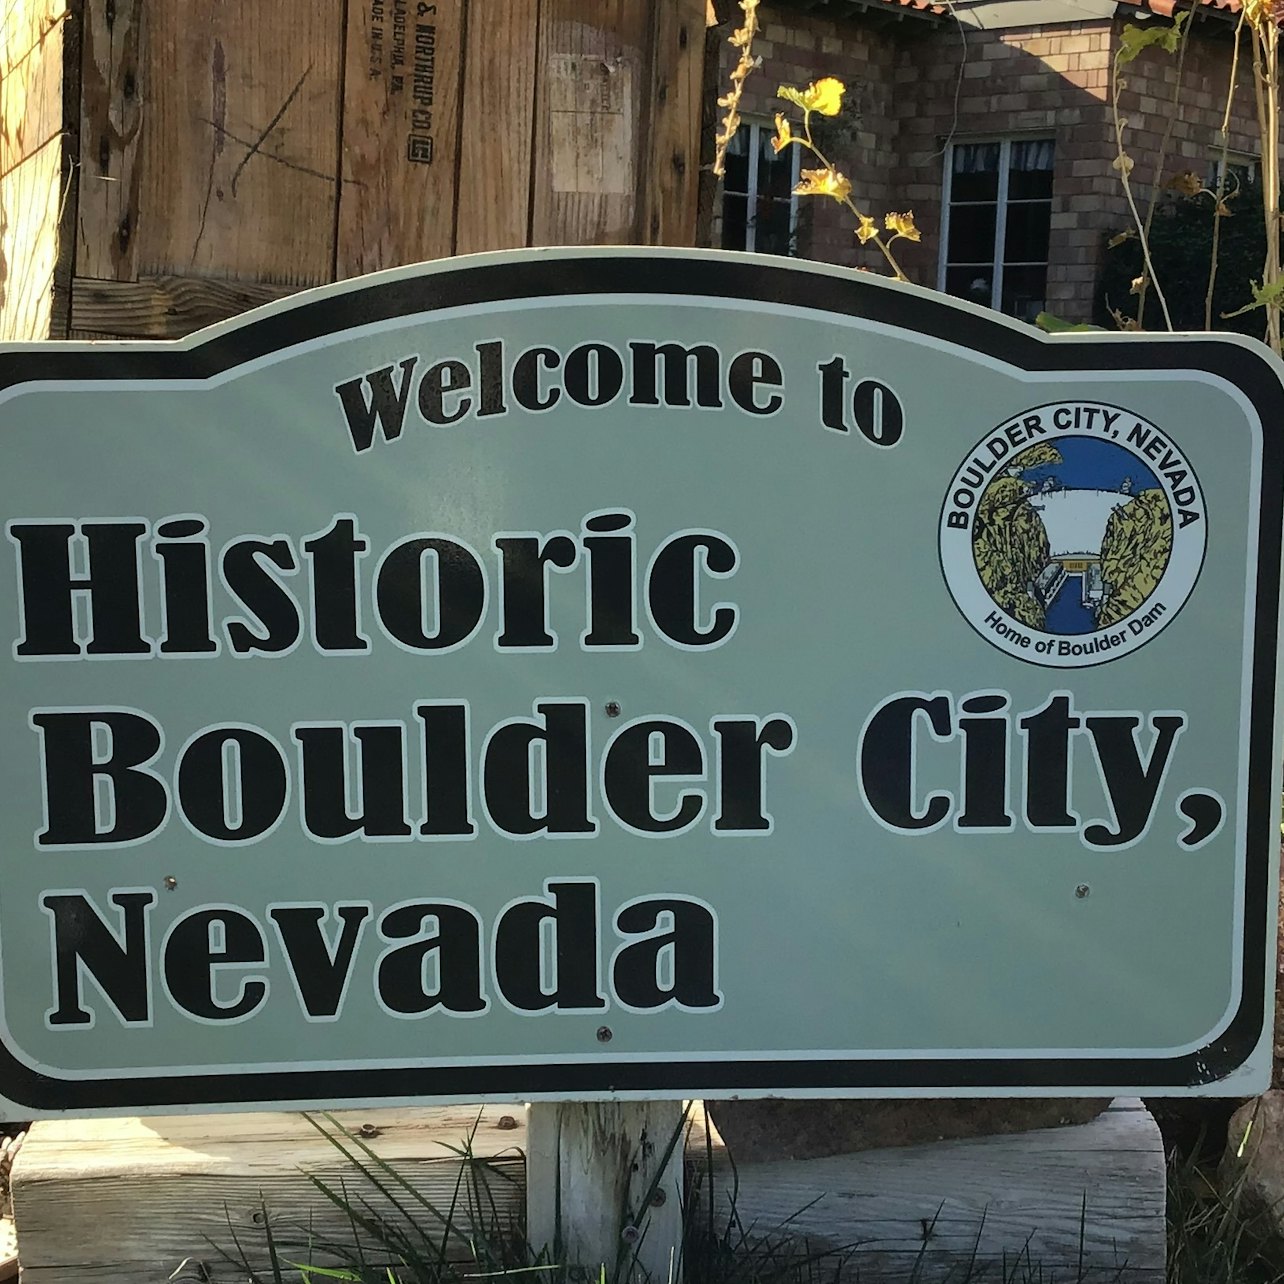 Hoover Dam Highlights Tour de Las Vegas - Acomodações em Las Vegas, Nevada